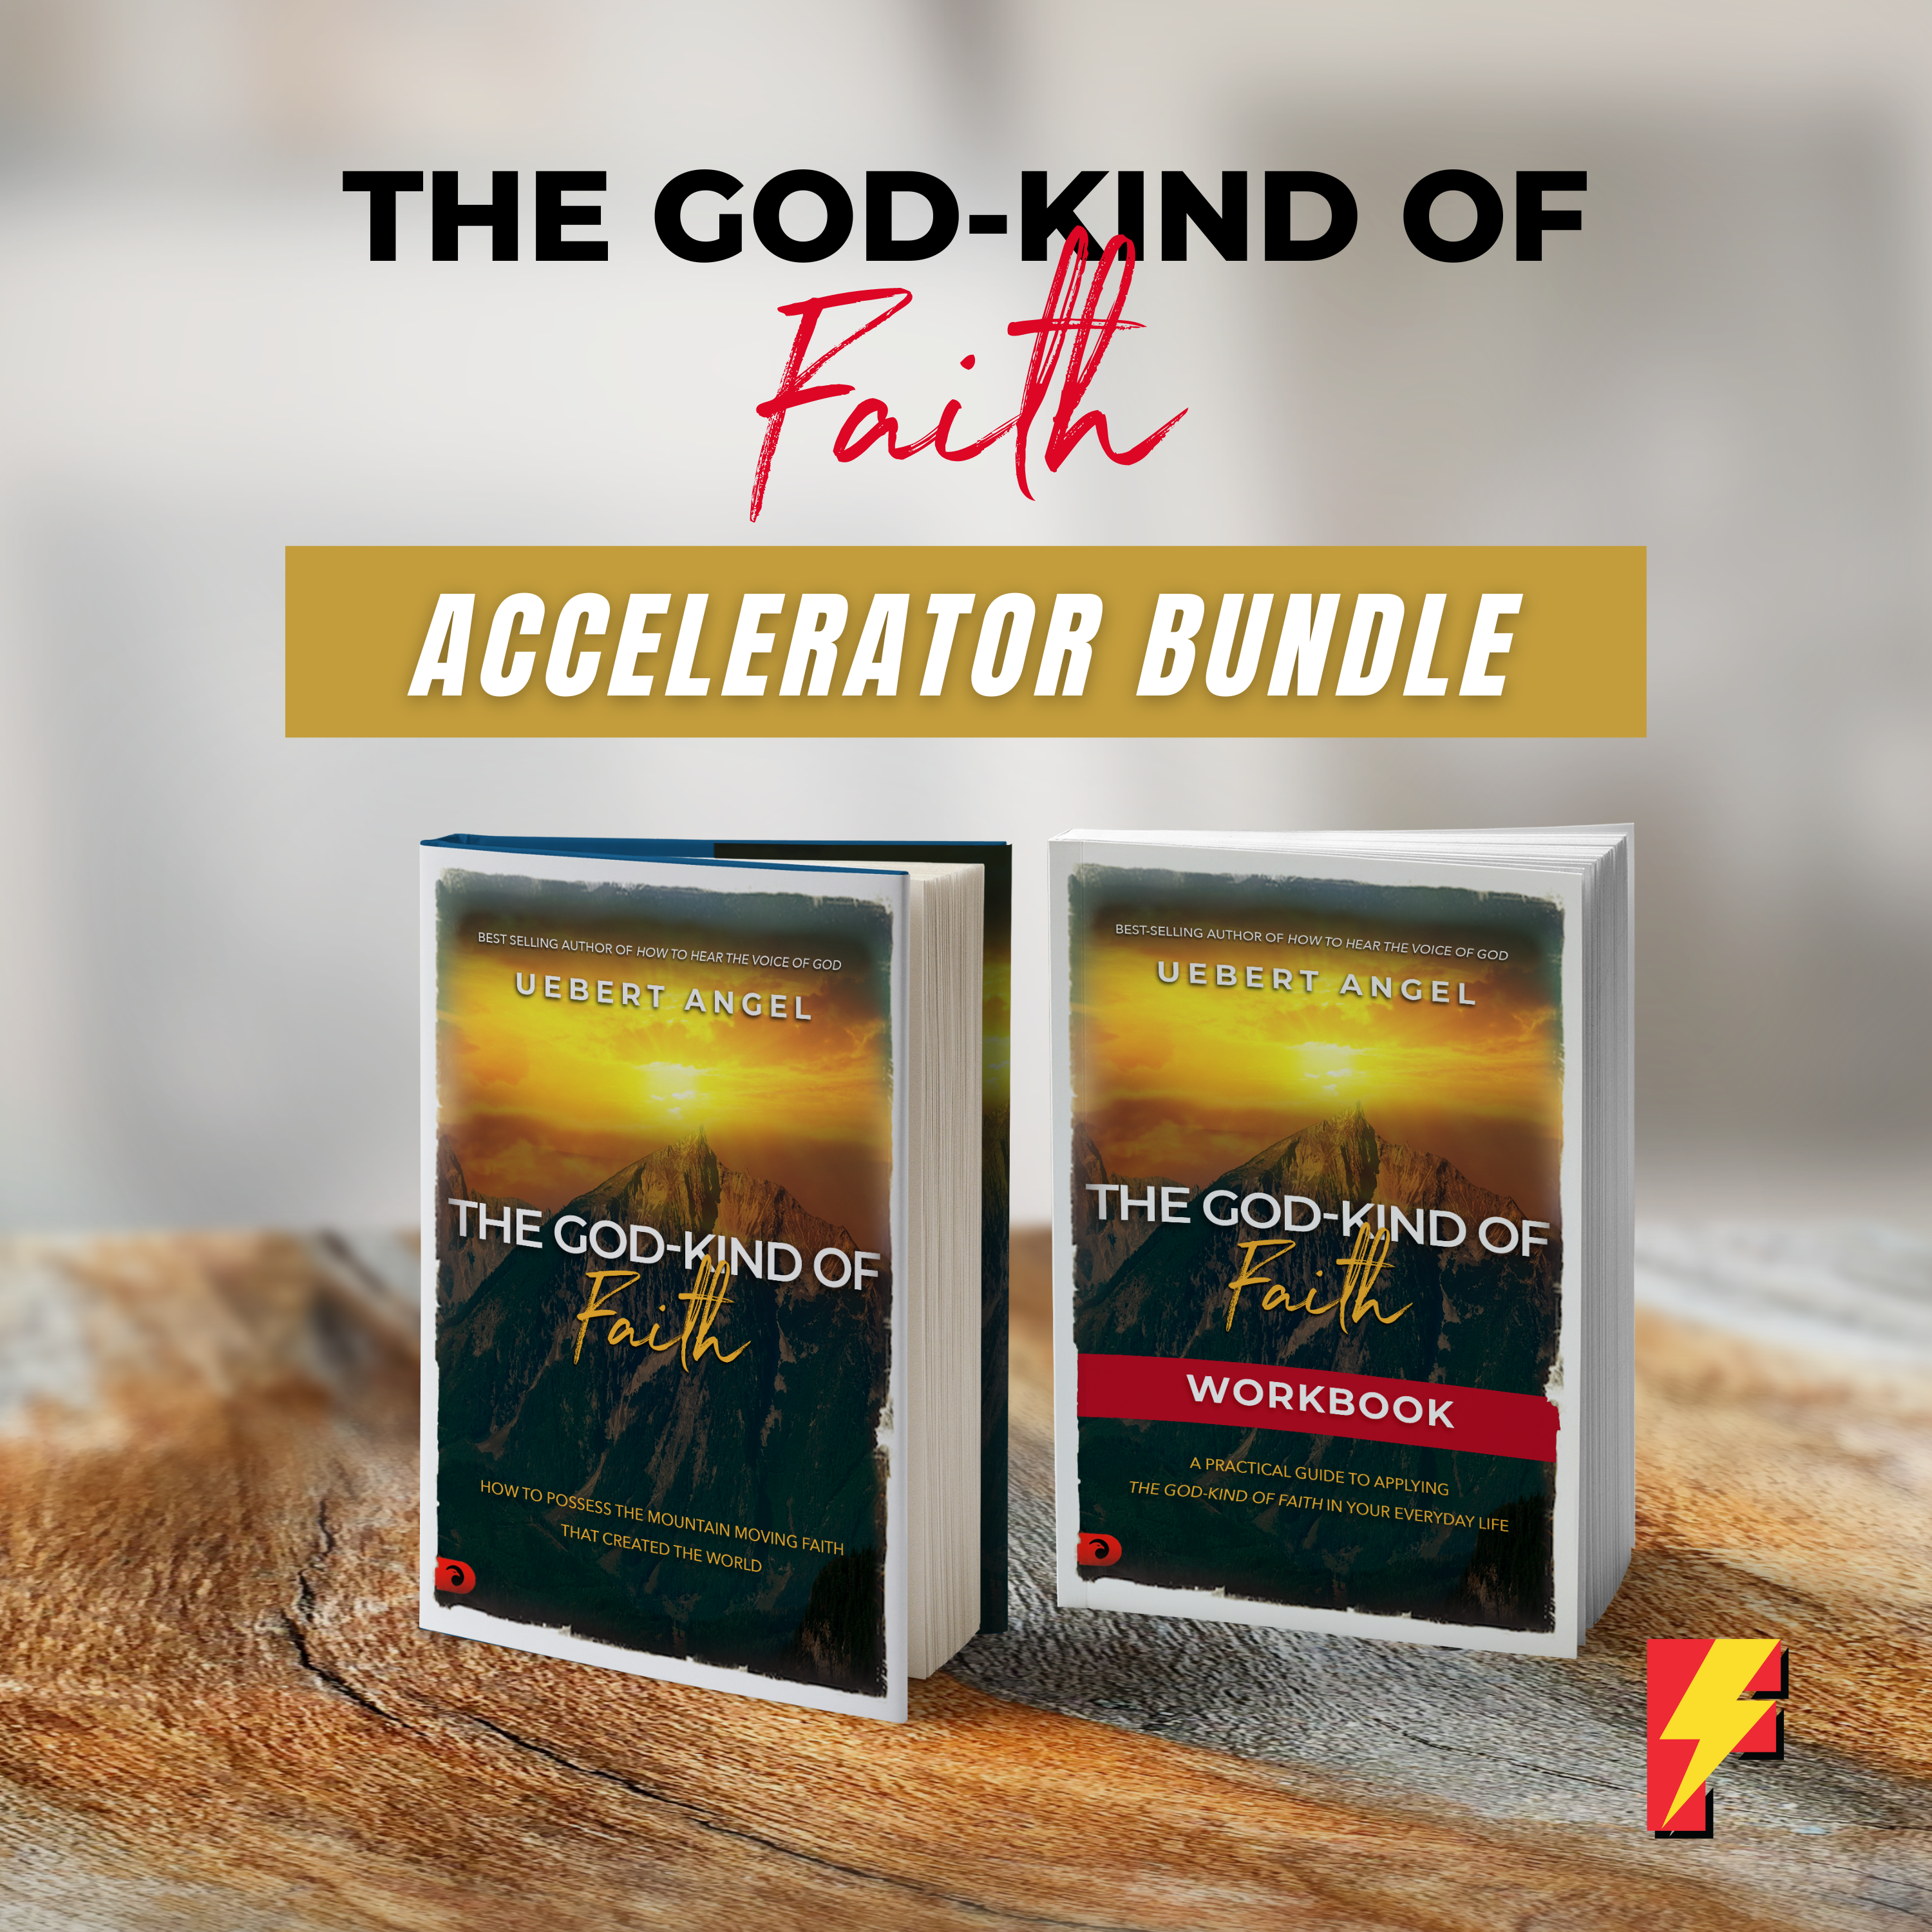 The God-Kind of Faith Accelerator Bundle